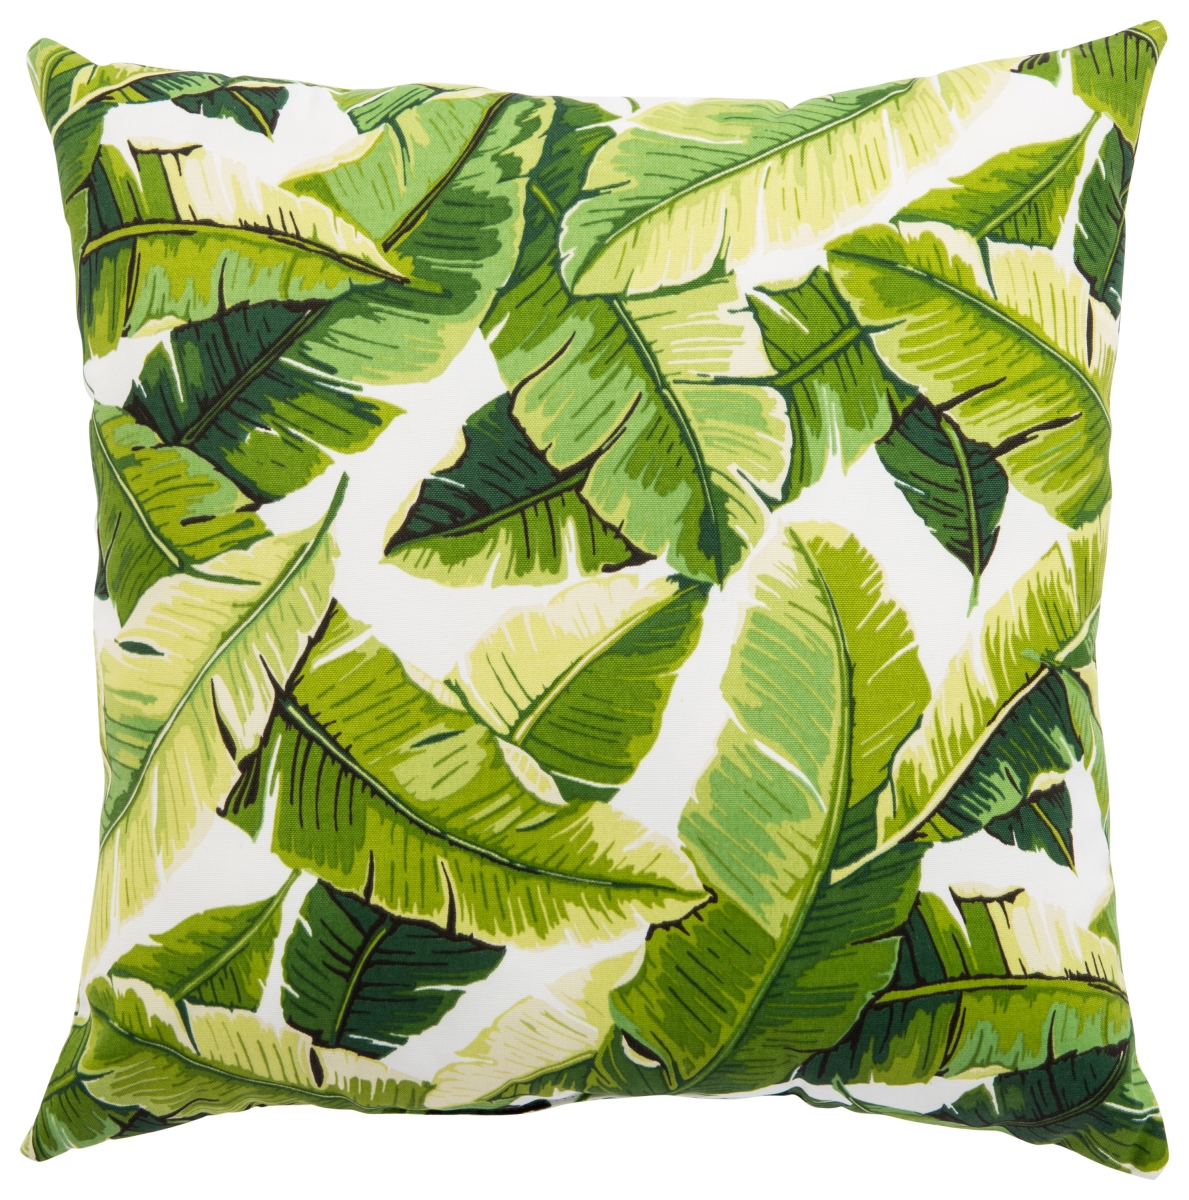 Plp100074 20 X 20 In. Veranda Balmoral White & Green Floral Indoor & Outdoor Throw Pillow